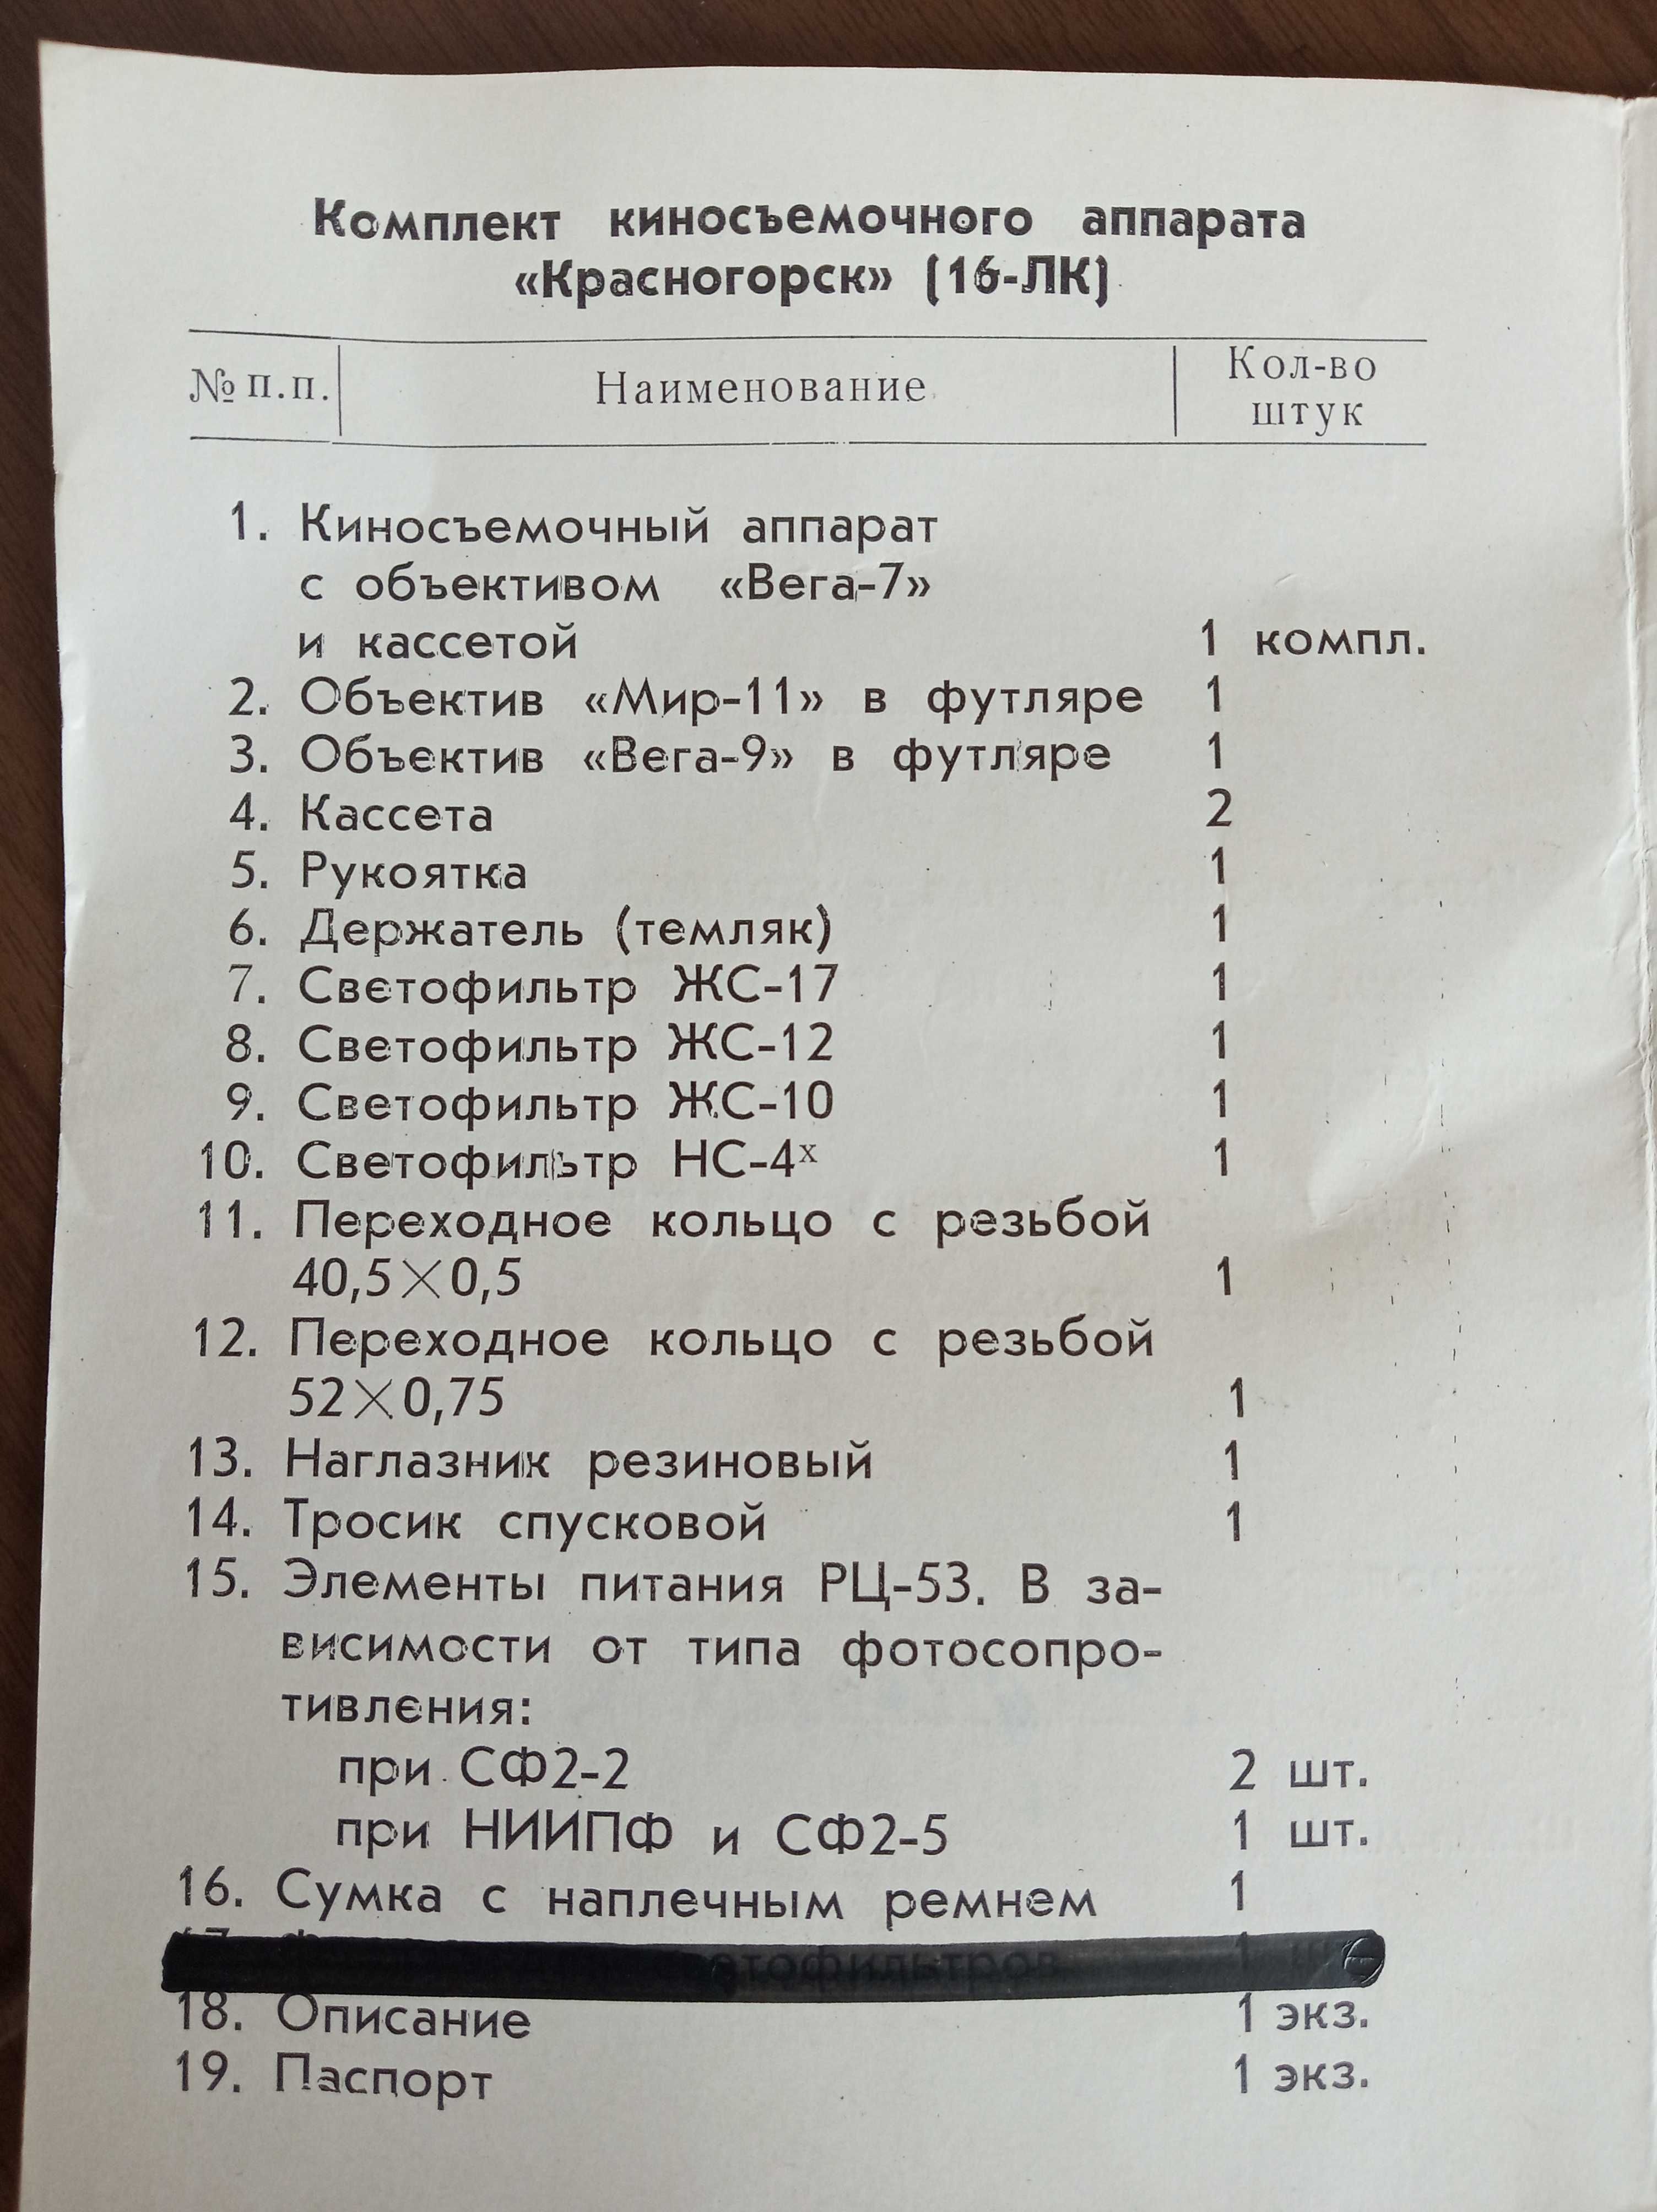 Недорого! Паспорт кинокамеры Красногорск, 1967г.